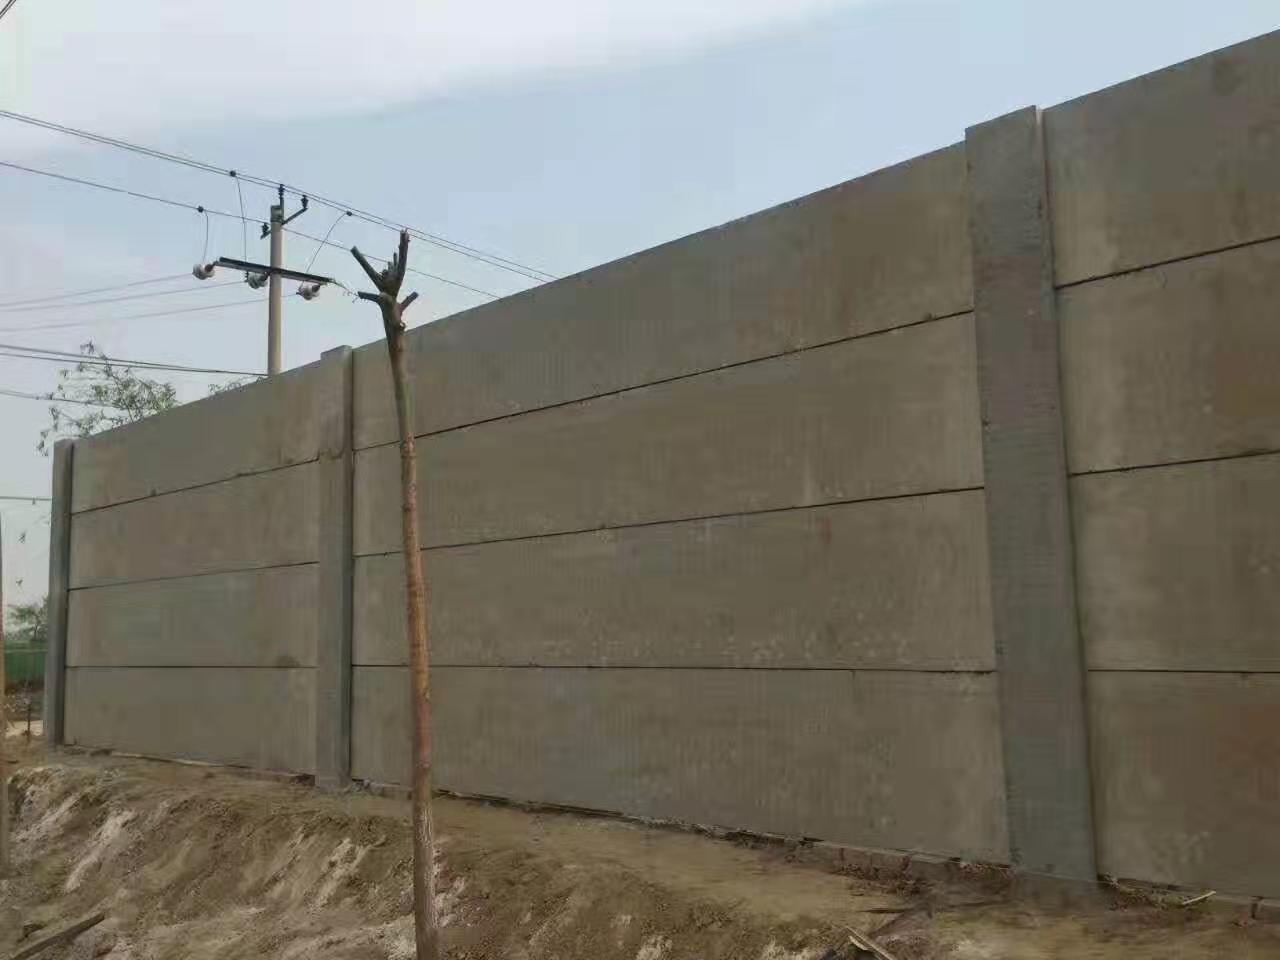 水泥围墙板,预制围墙,临时圈地围墙,养殖场围墙,工程围墙